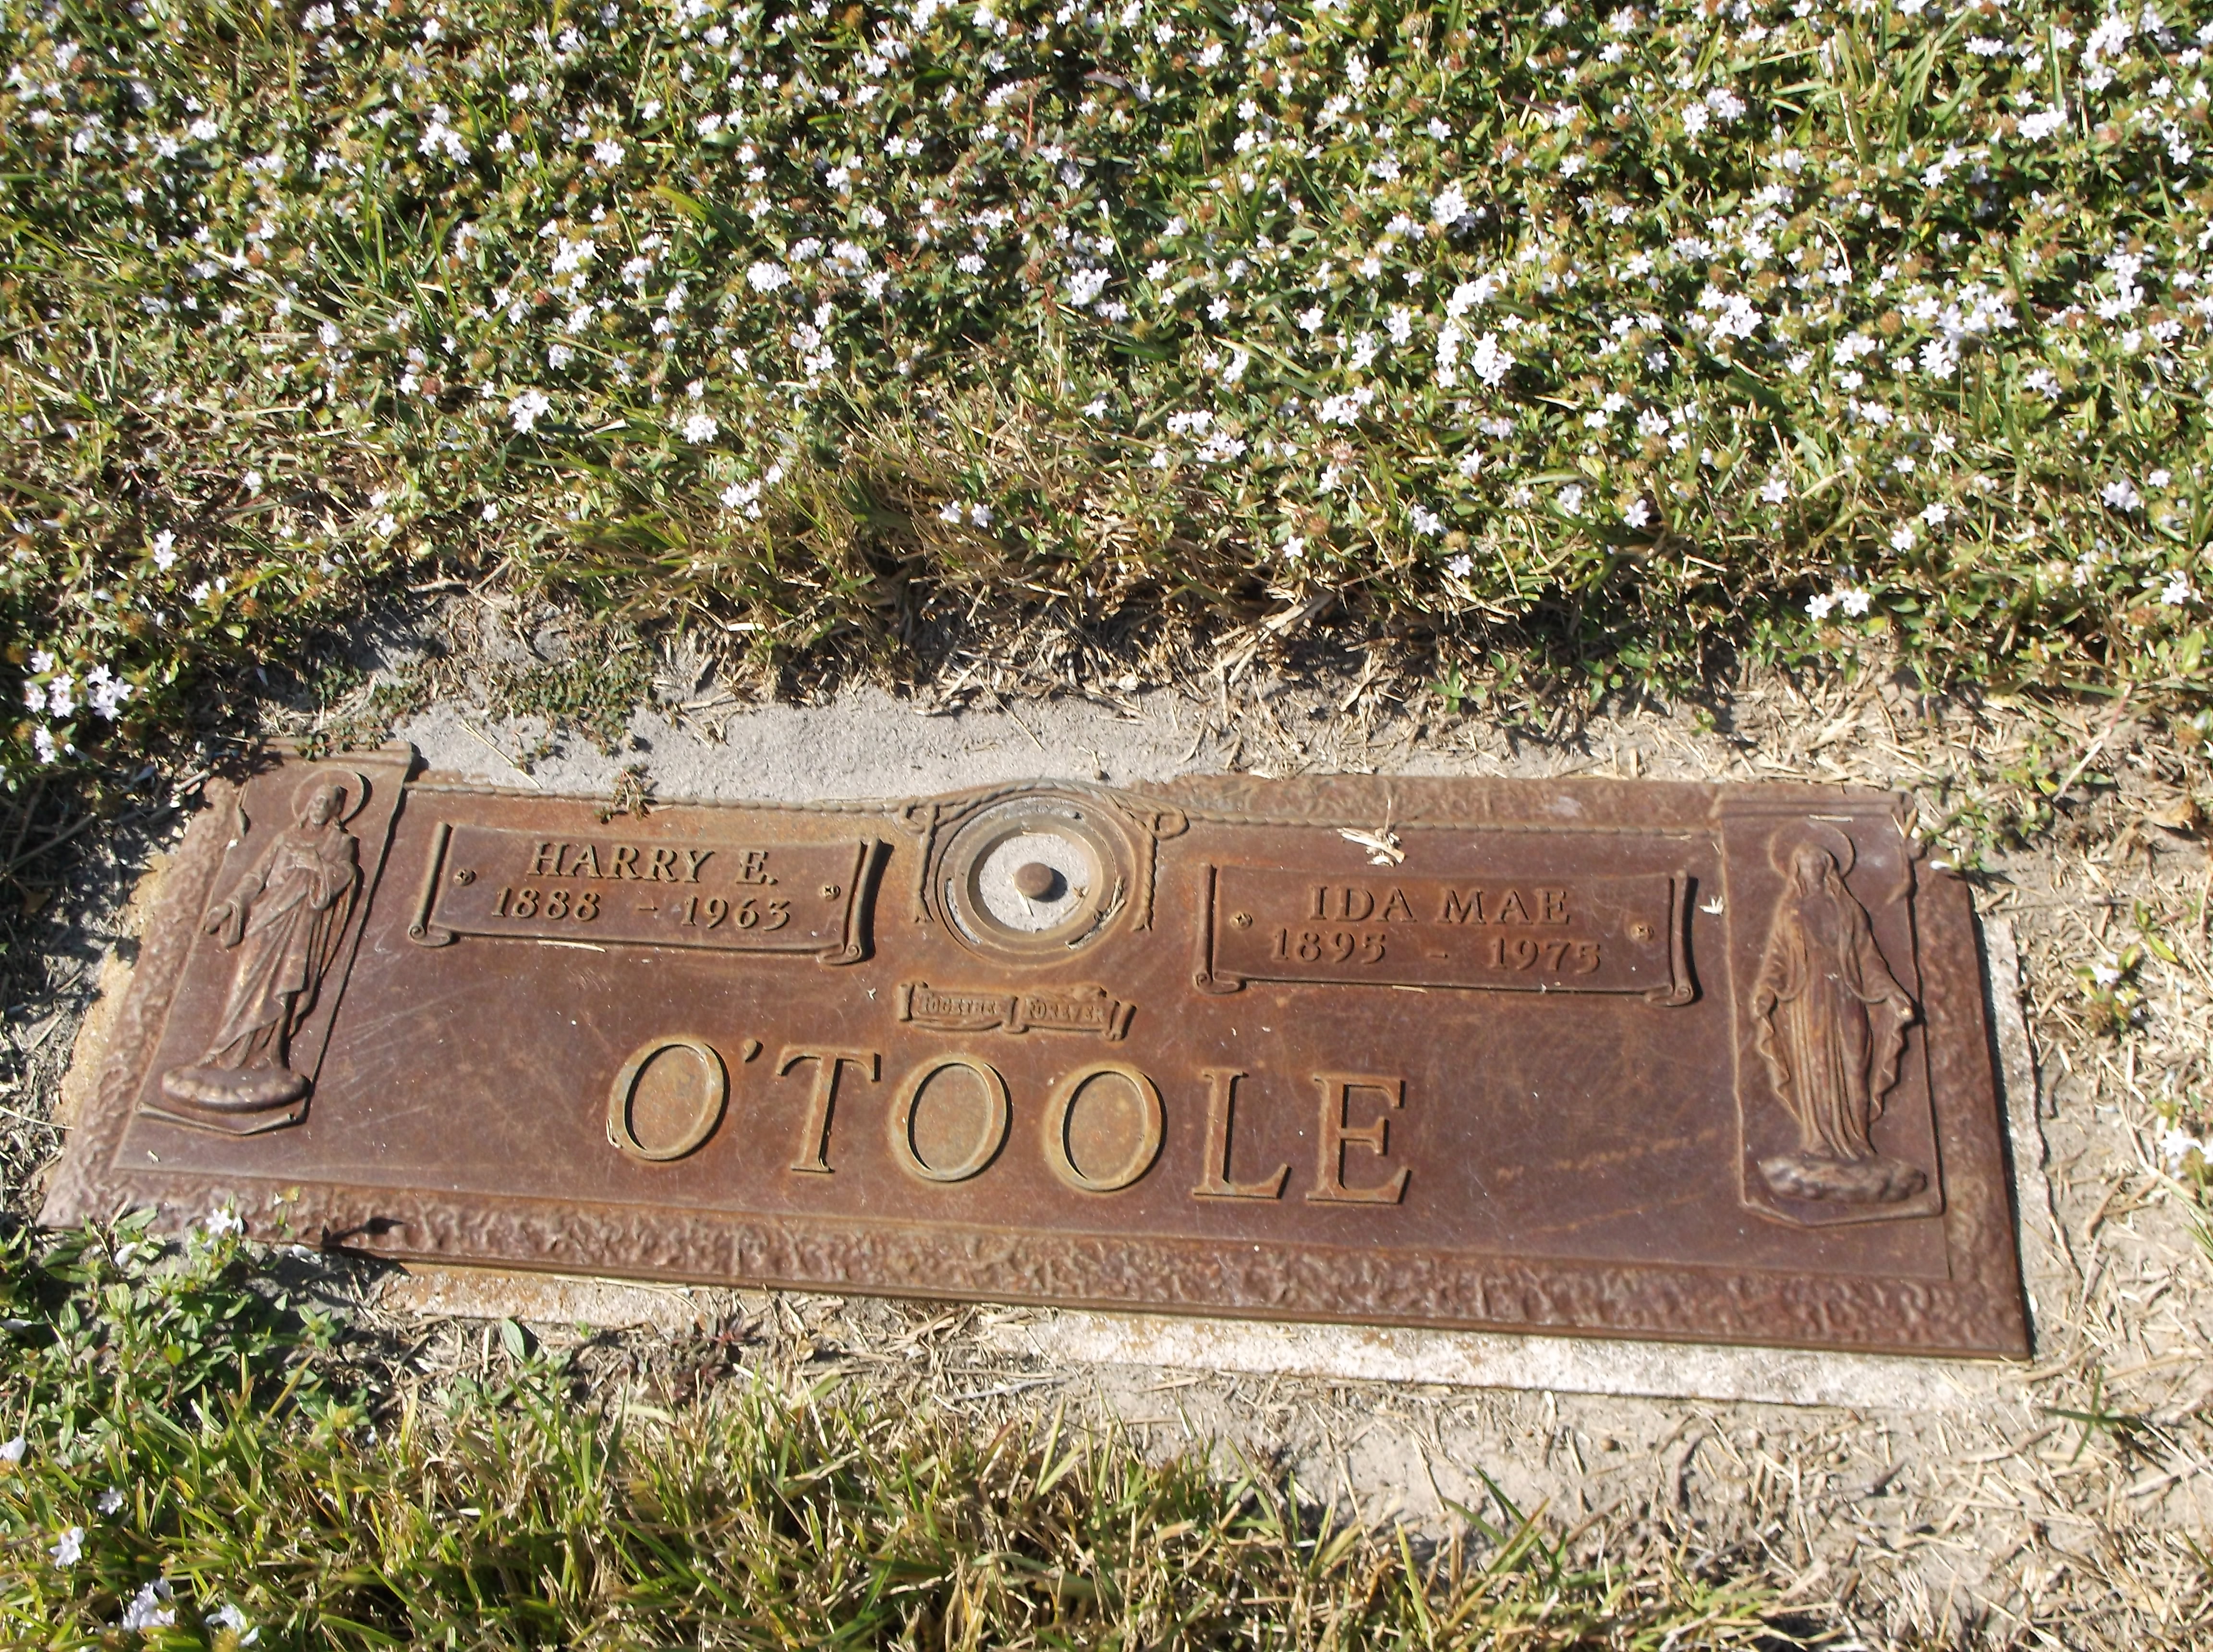 Harry E O'Toole